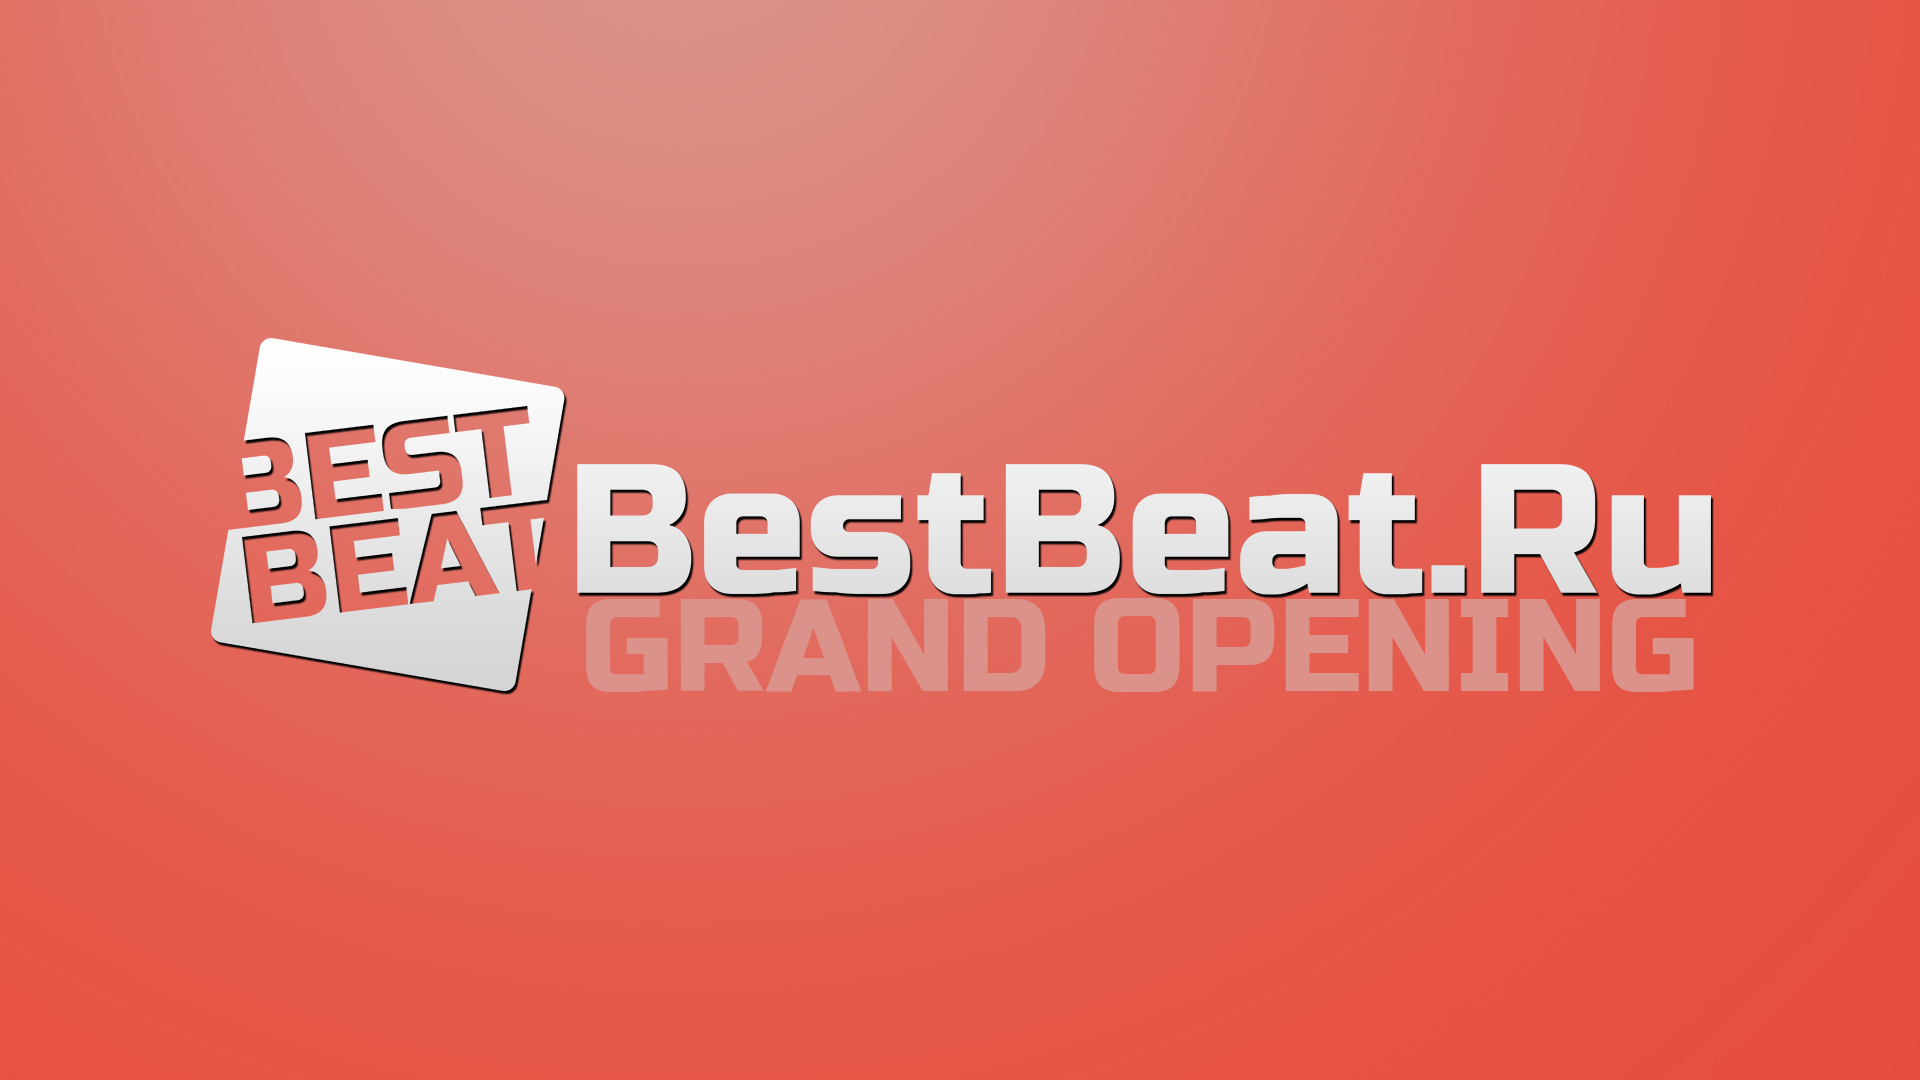 BestBeat.Ru Grand Opening